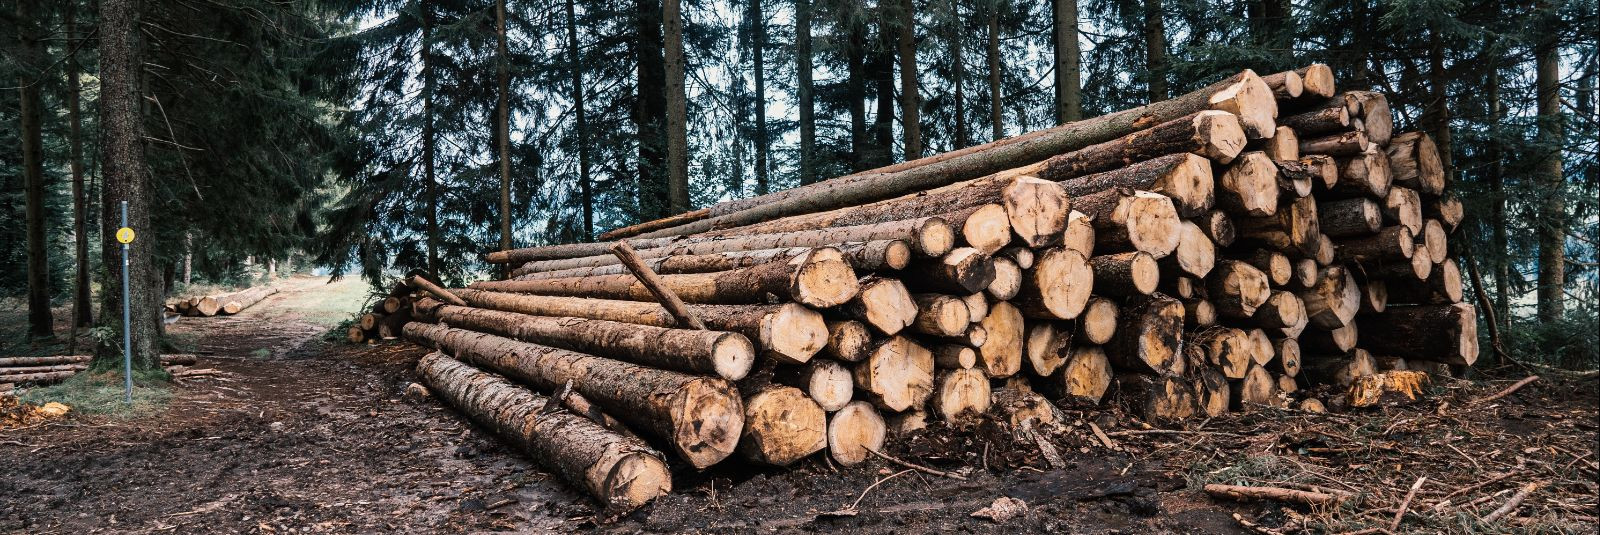 Metsamaterjali vedu on üks metsanduse olulisemaid etappe, mis mõjutab kogu puidutööstuse toimimist. See artikkel keskendub metsamaterjali veo teemale, vaadeldes